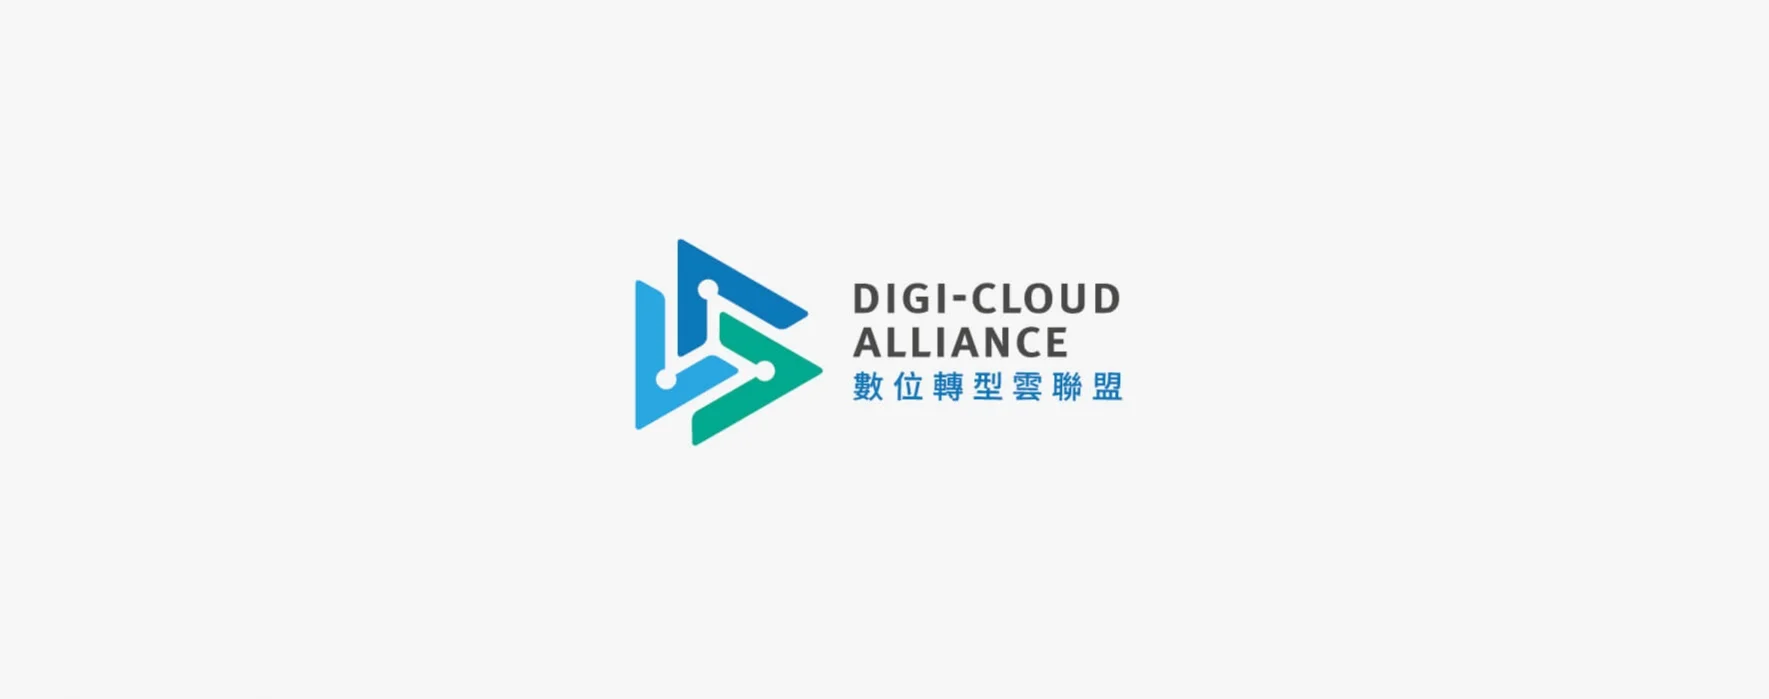 DELL digital transformation brand logo design